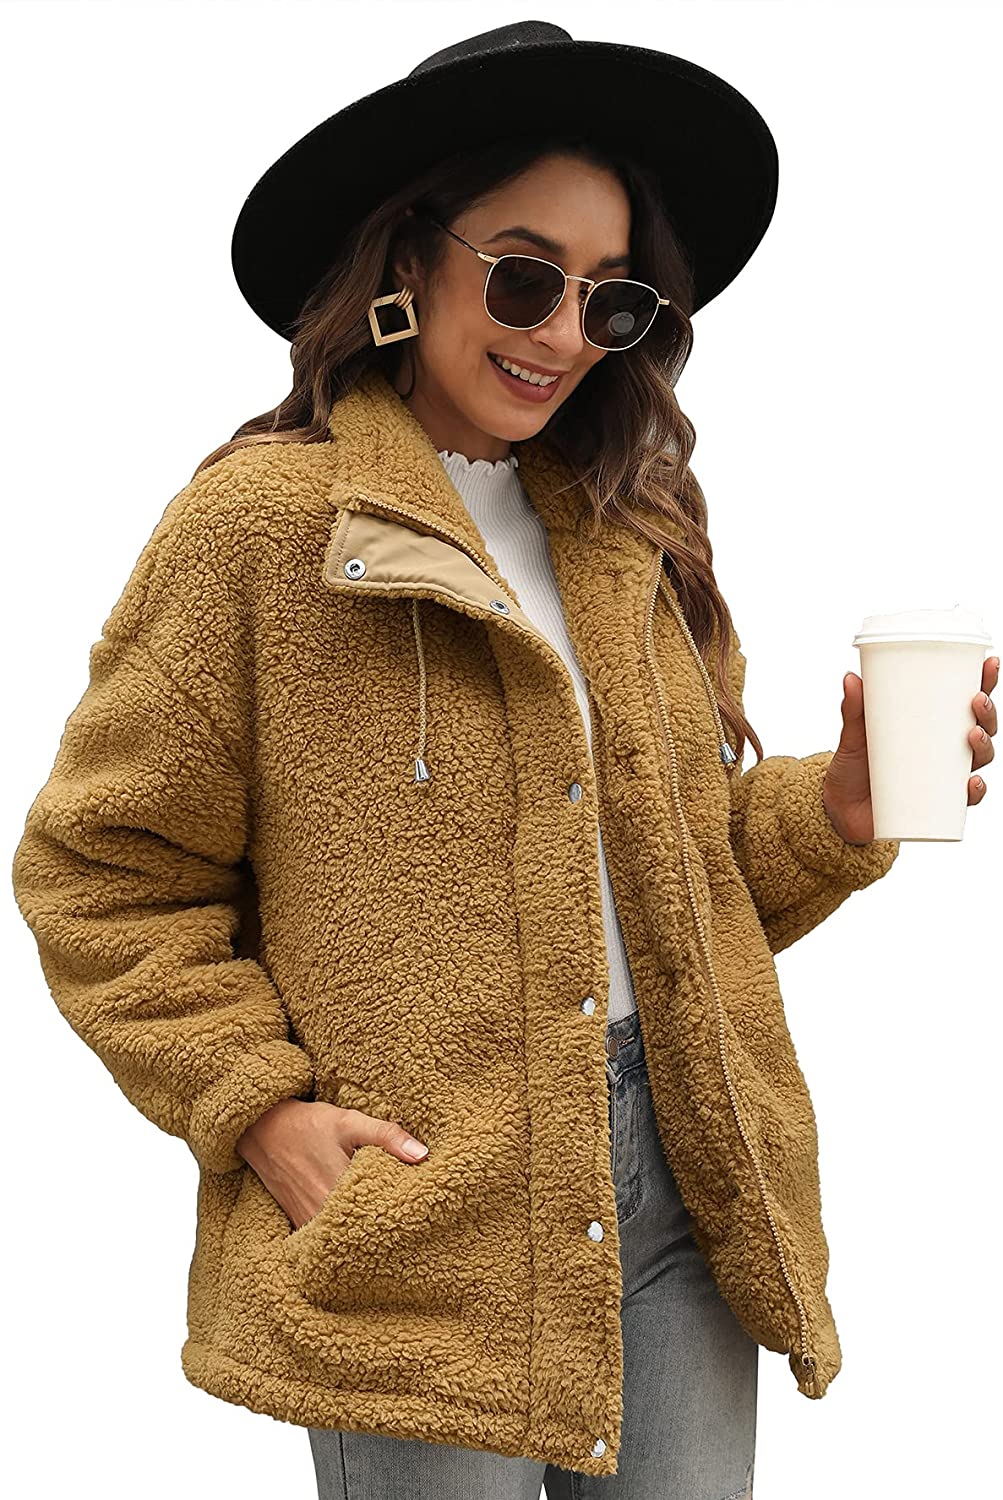 Women's Fuzzy Sherpa Jacket Casual Winter Warm Fluffy Shearling Fleece Coat with Pockets 